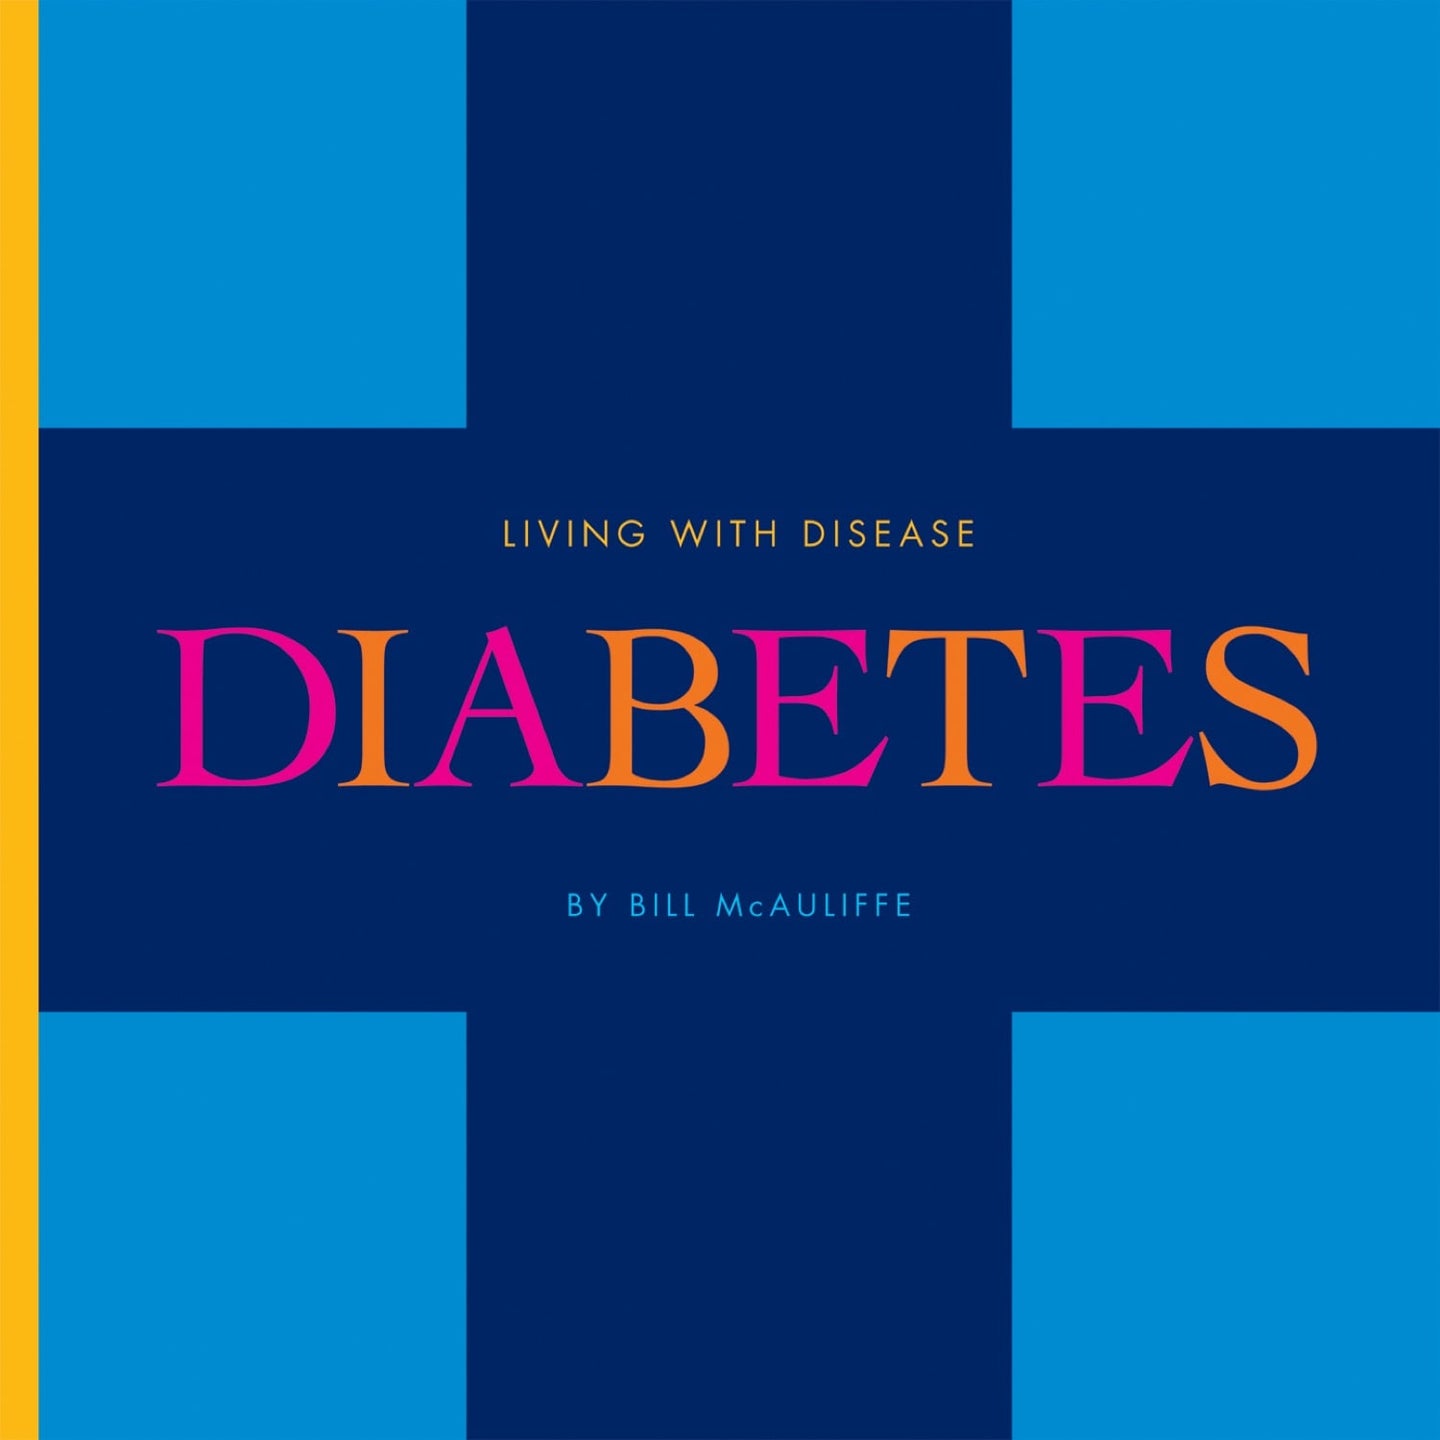 Living with Disease: Diabetes